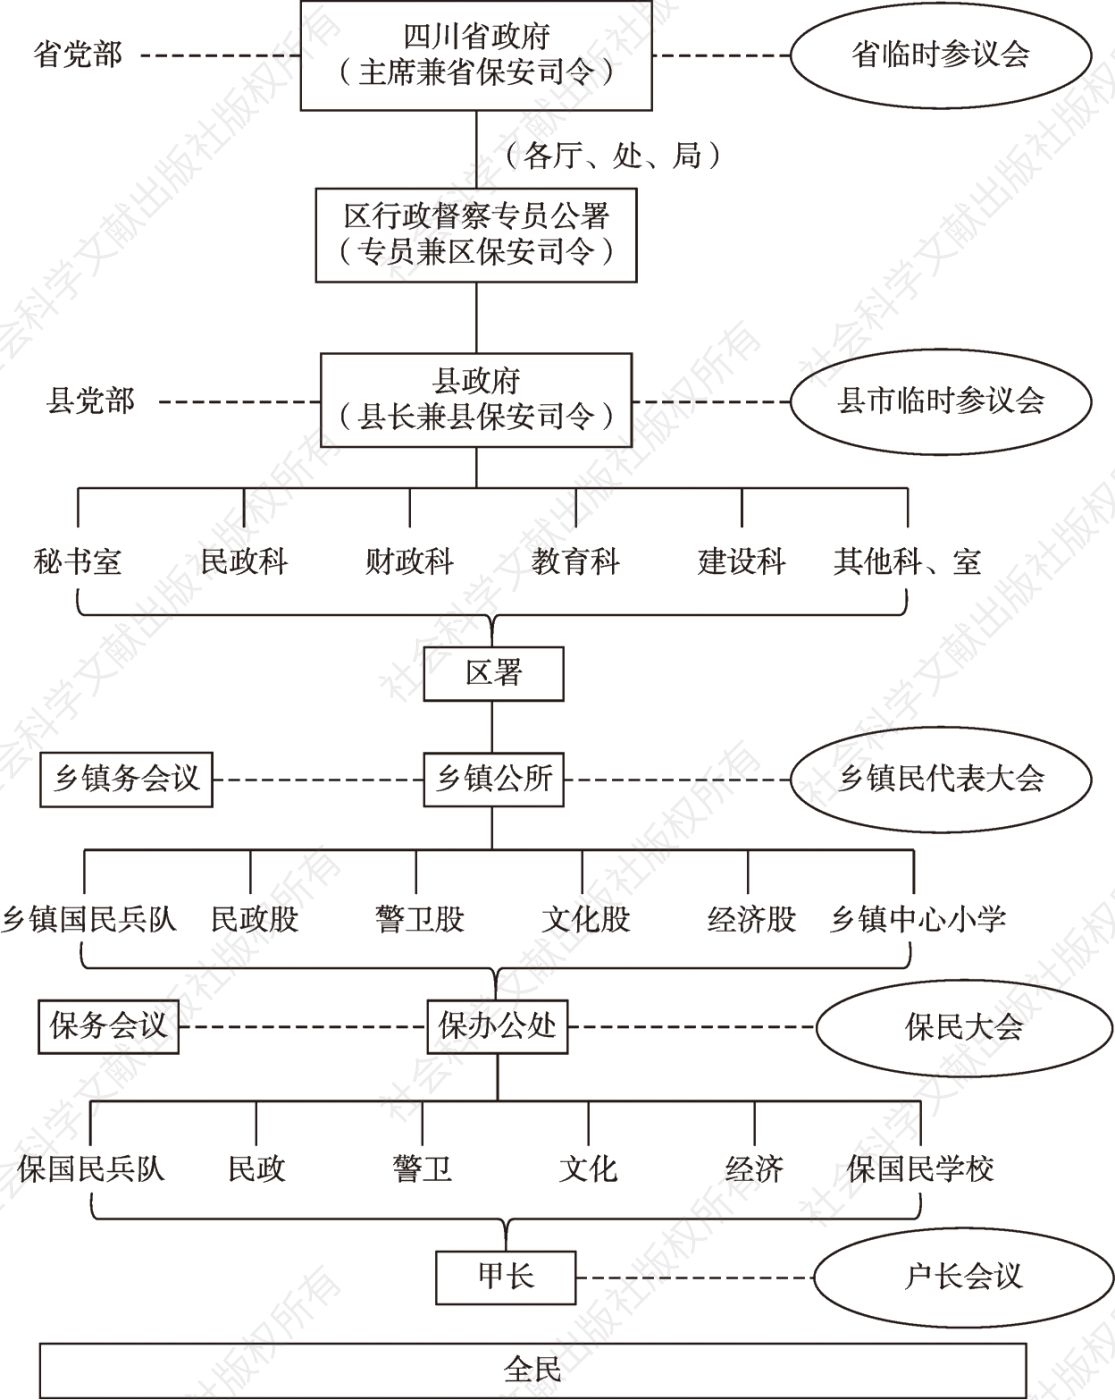 图1 1945年四川省地方治理系统